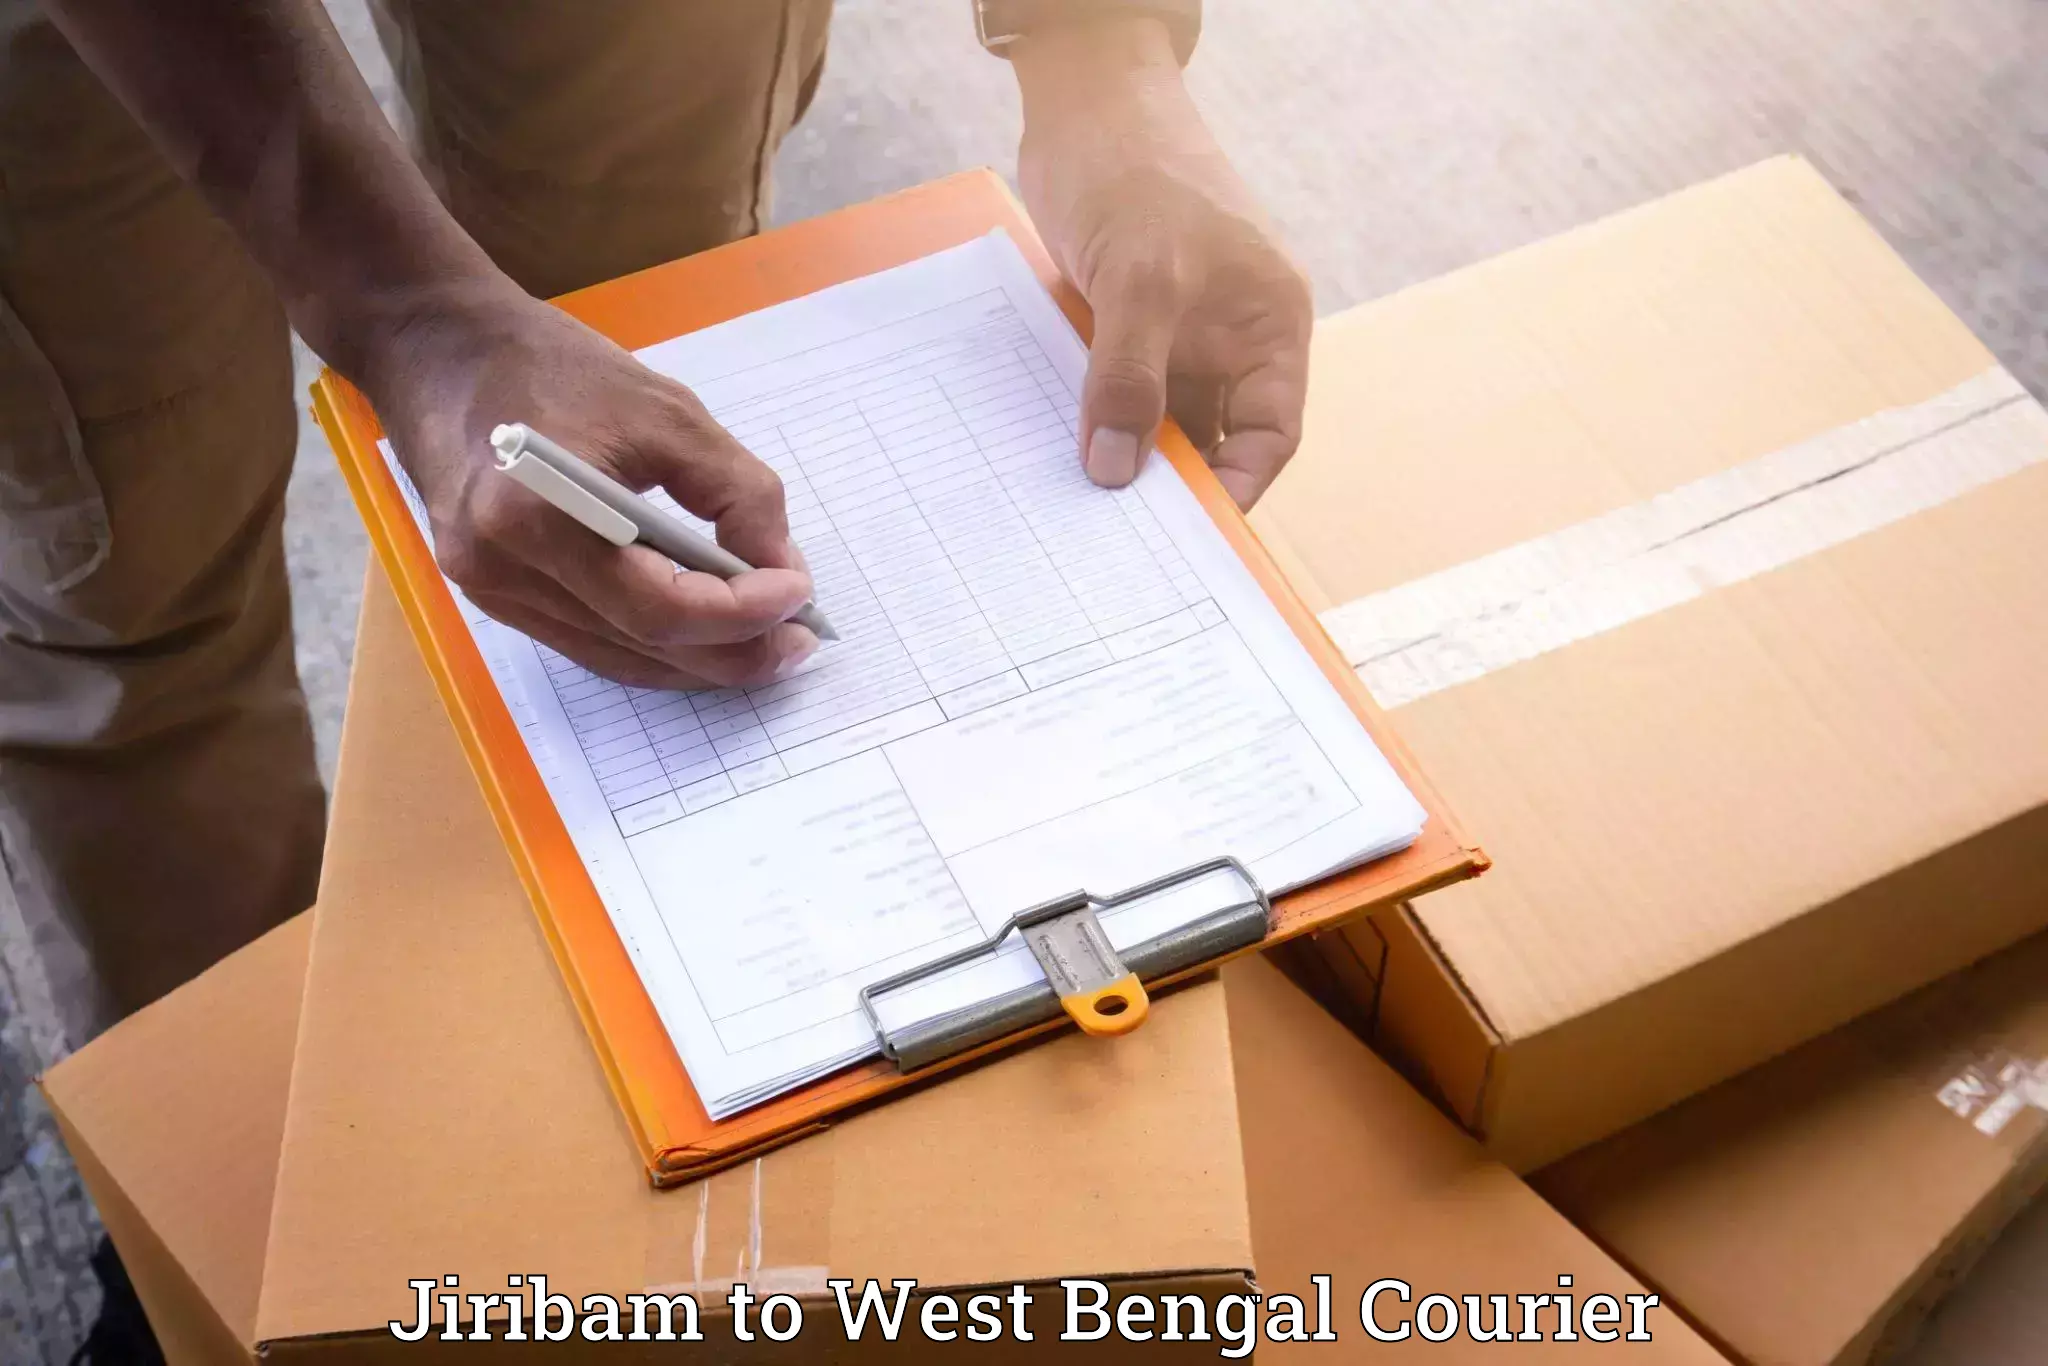 Quality furniture movers in Jiribam to Binnaguri